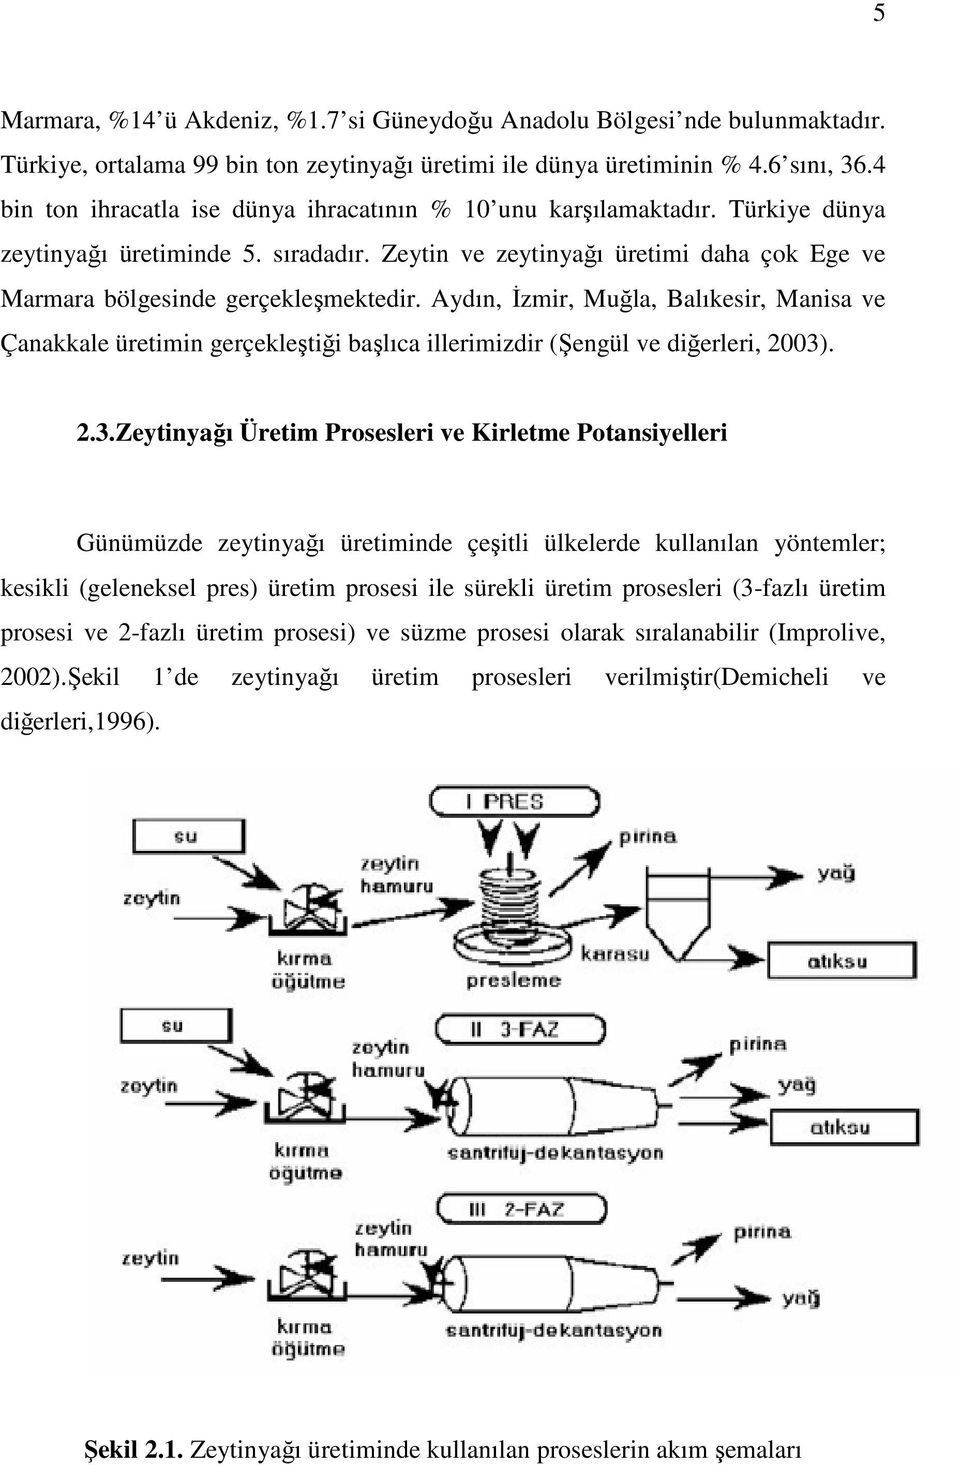 Aydın, Đzmir, Muğla, Balıkesir, Manisa ve Çanakkale üretimin gerçekleştiği başlıca illerimizdir (Şengül ve diğerleri, 2003)